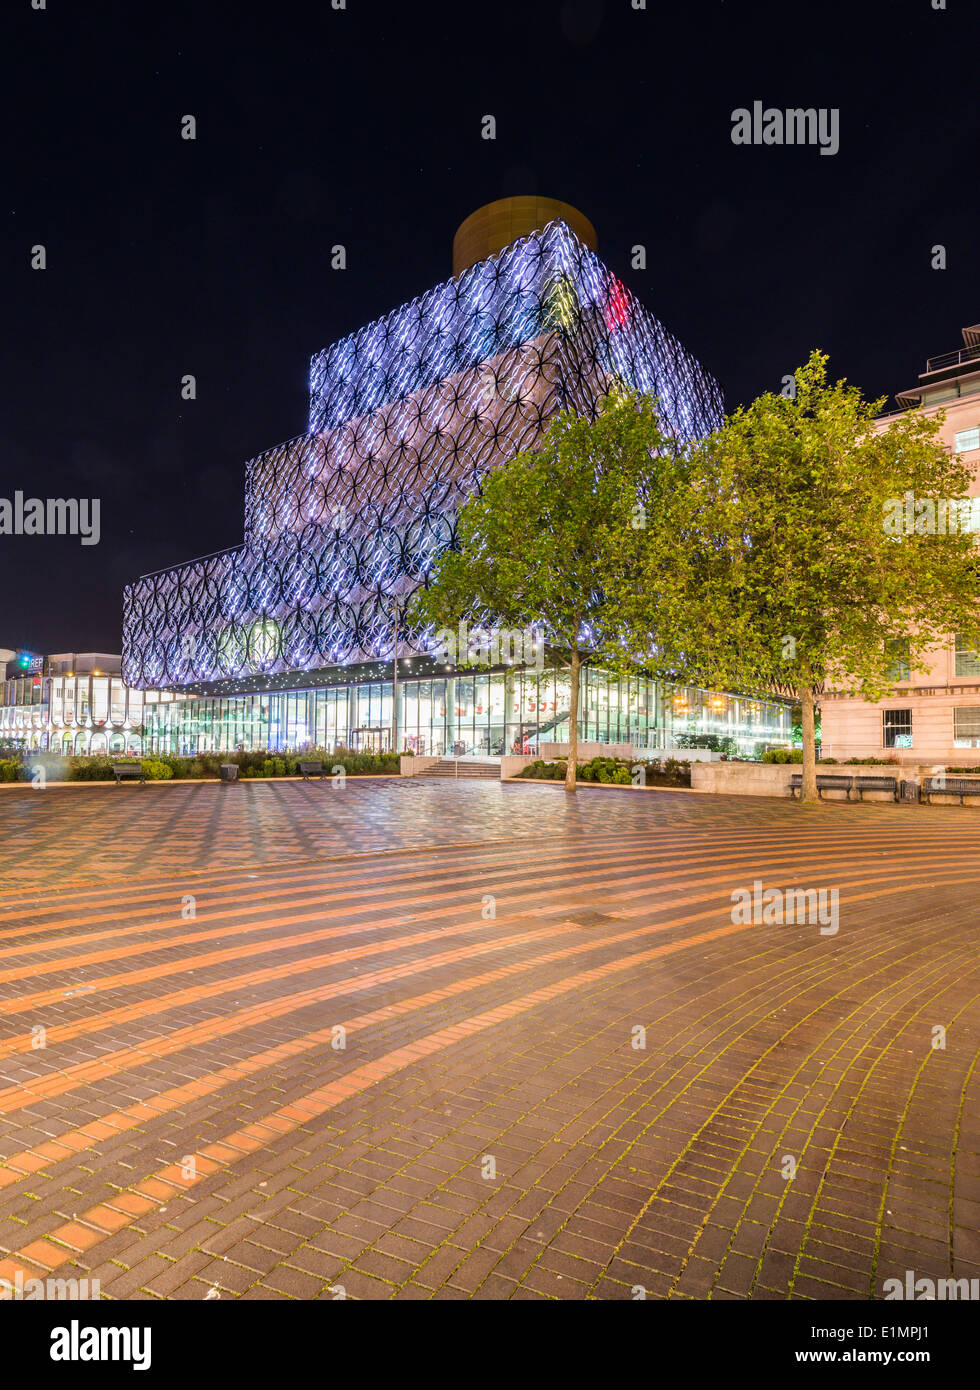 Eine Nachtansicht des Stadtzentrum von Birmingham in der Nacht, zeigt Centenary Square und die neue Bibliothek von Birmingham. Stockfoto